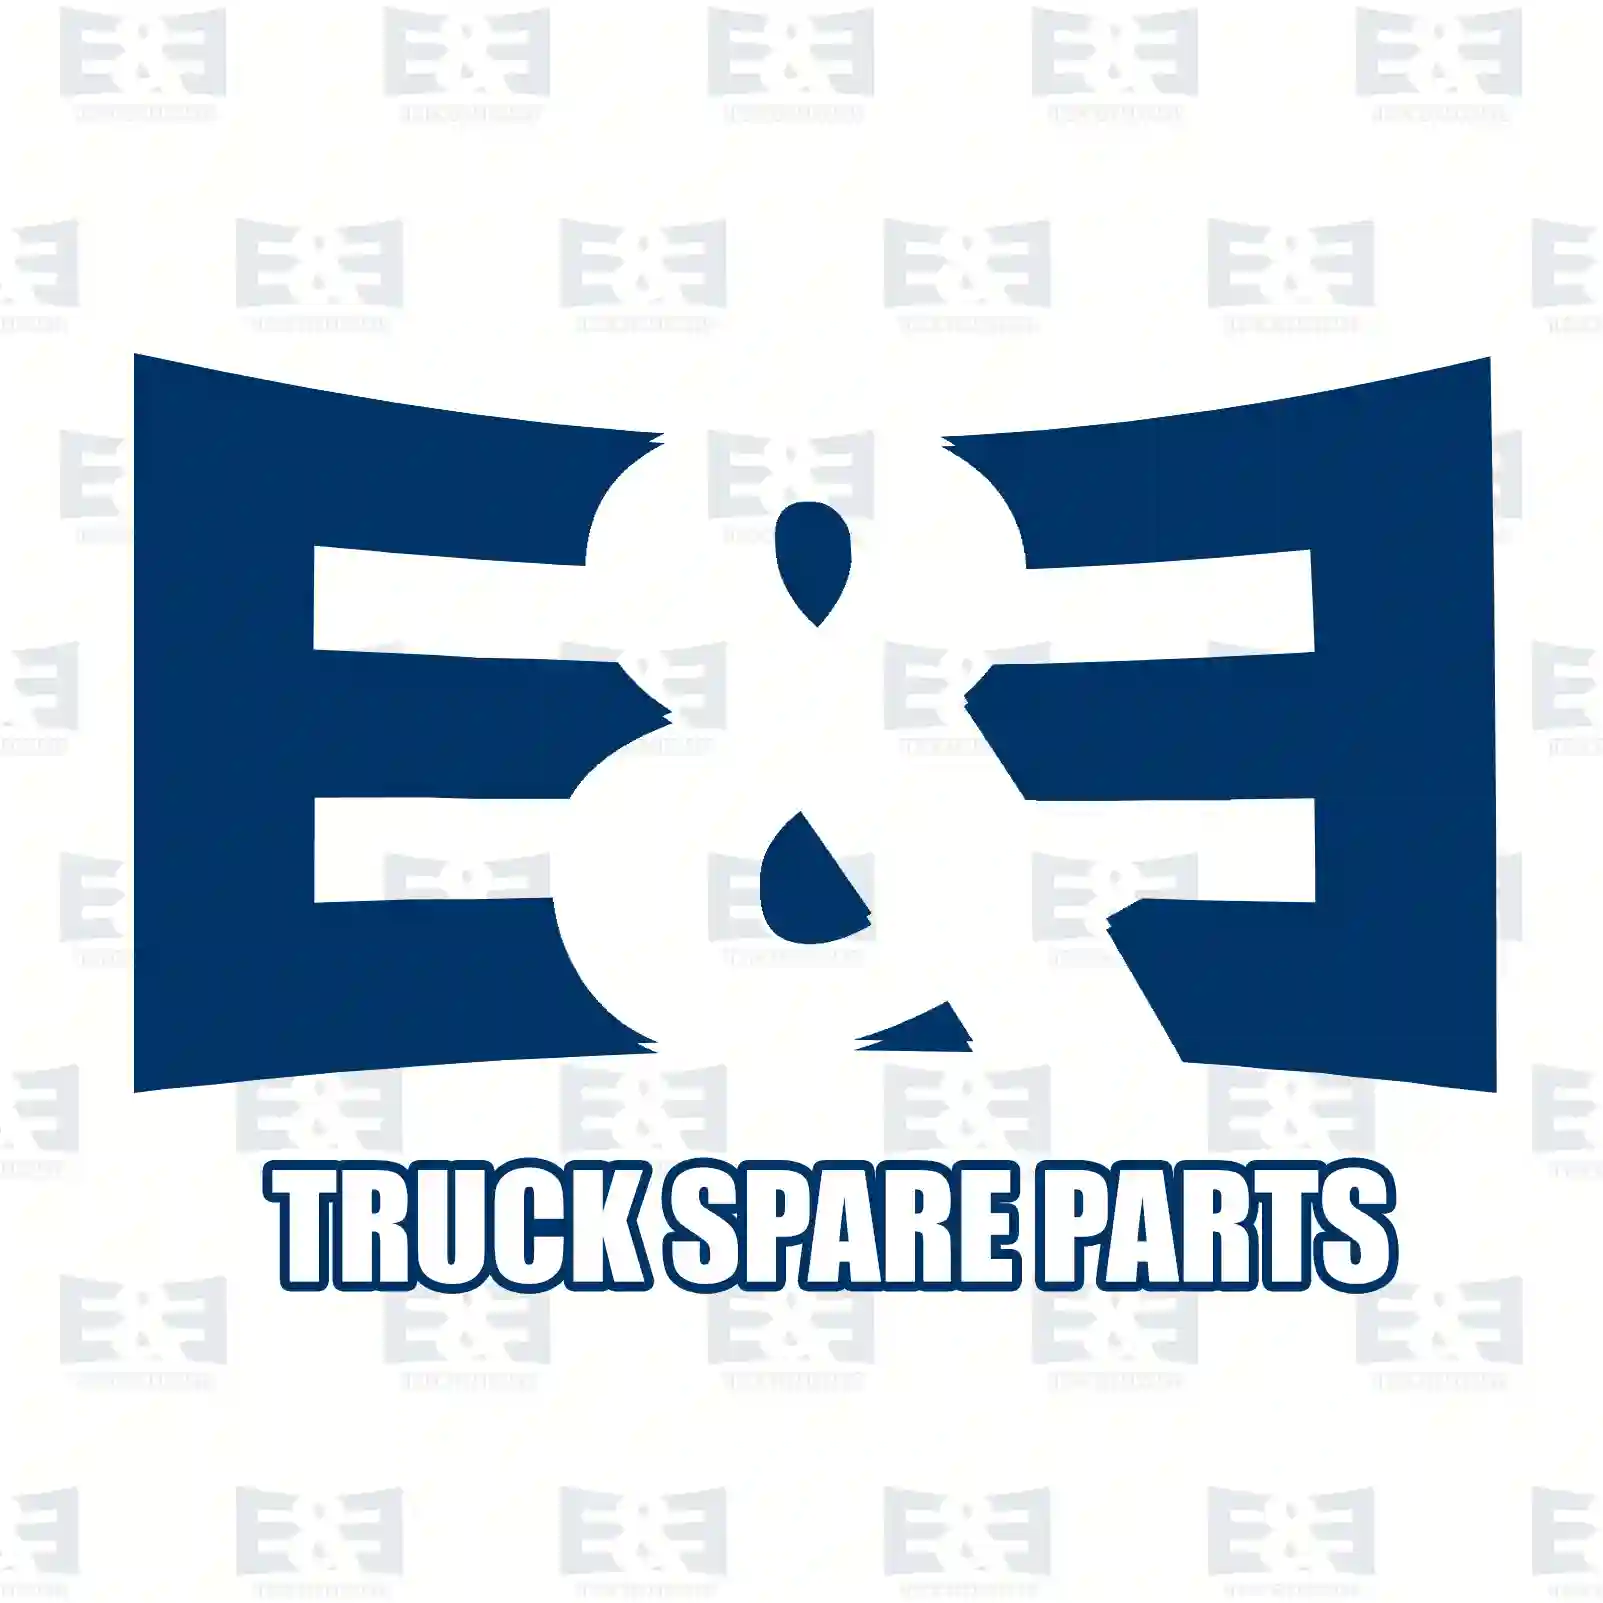 Exhaust brake, complete, 2E2208152, 1703112 ||  2E2208152 E&E Truck Spare Parts | Truck Spare Parts, Auotomotive Spare Parts Exhaust brake, complete, 2E2208152, 1703112 ||  2E2208152 E&E Truck Spare Parts | Truck Spare Parts, Auotomotive Spare Parts